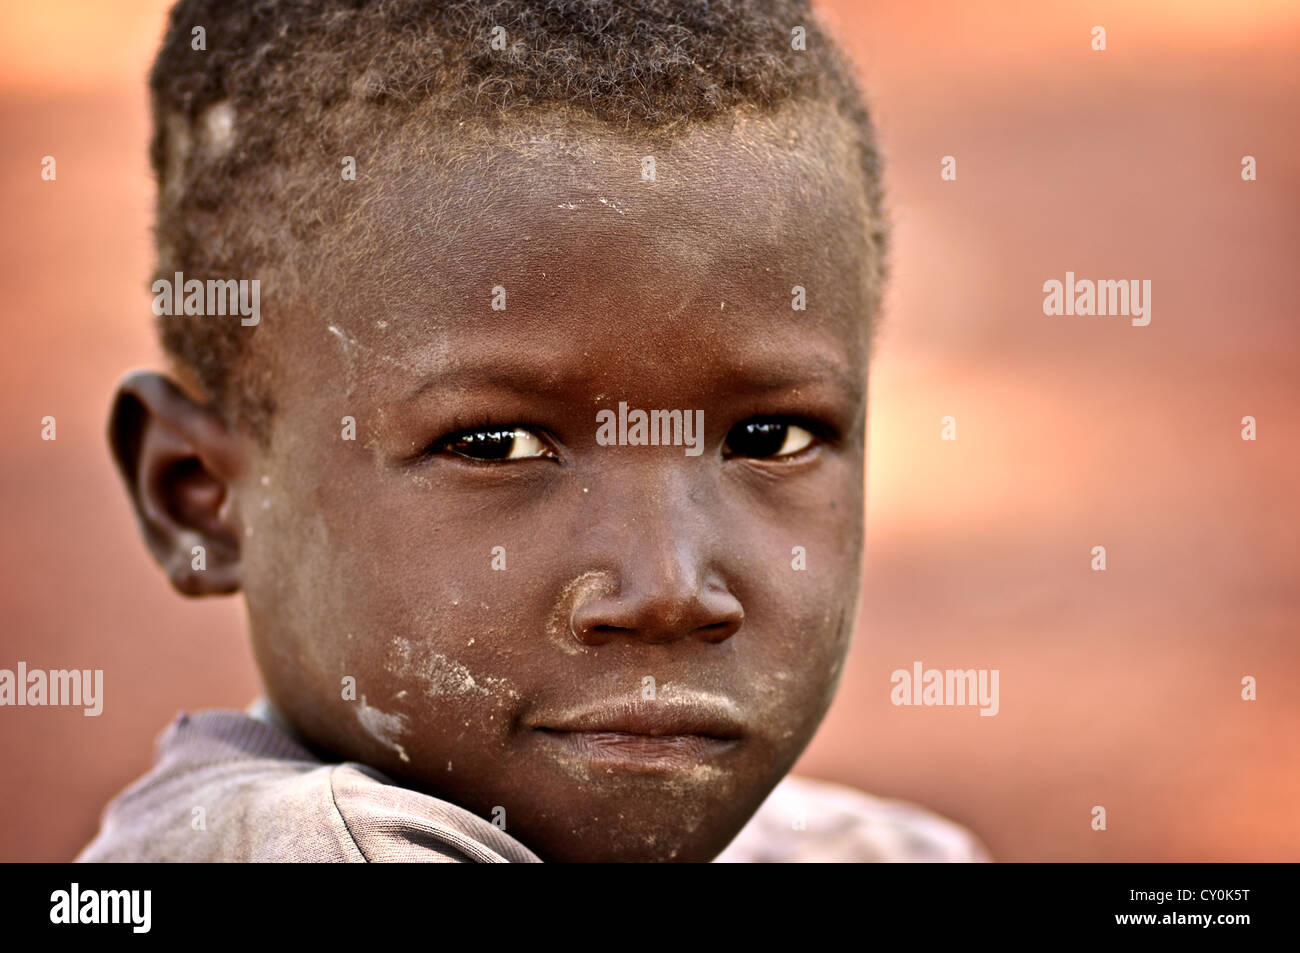 Portrait d'un enfant burkinabé. Burkina Faso Banque D'Images